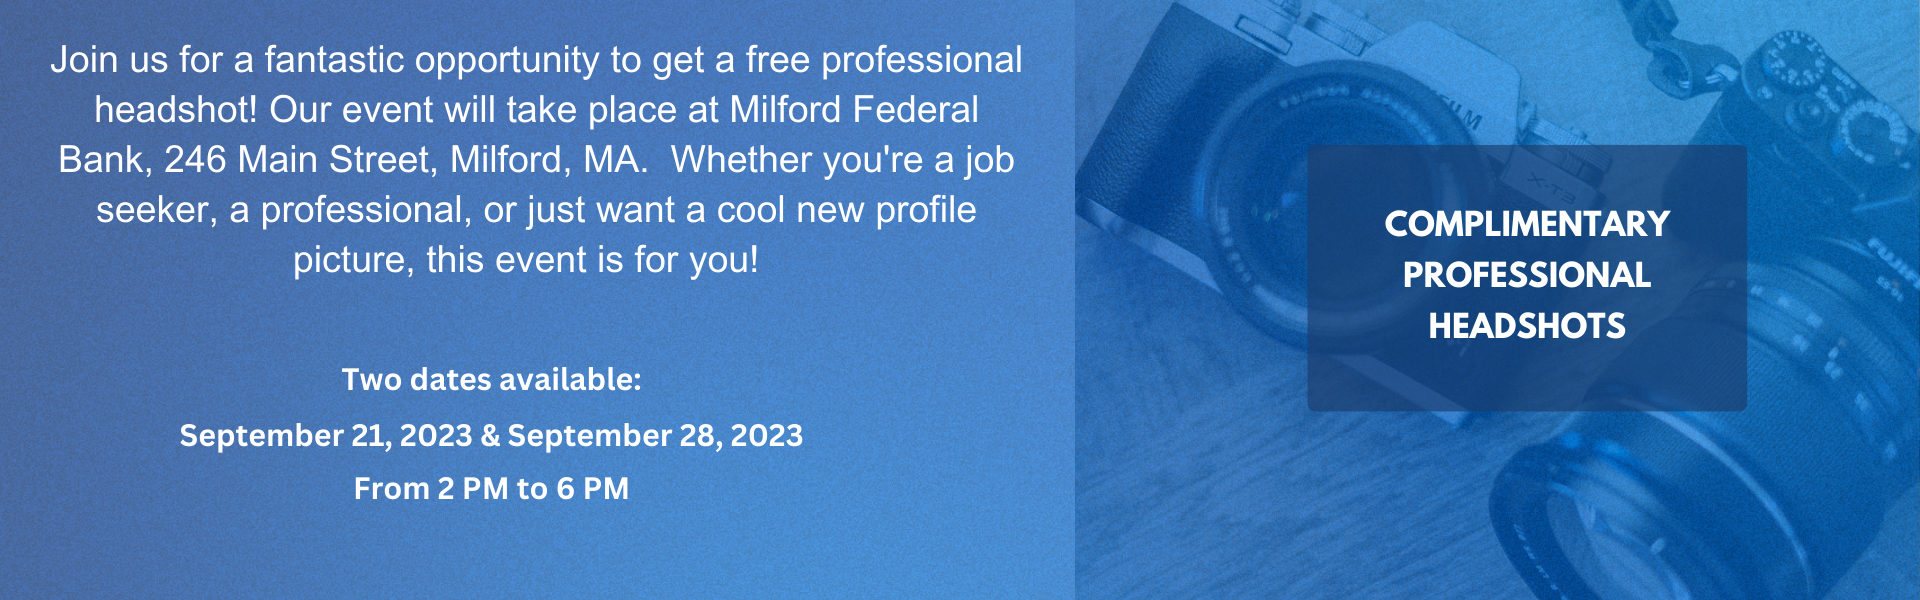 Free headshots at Milford Federal